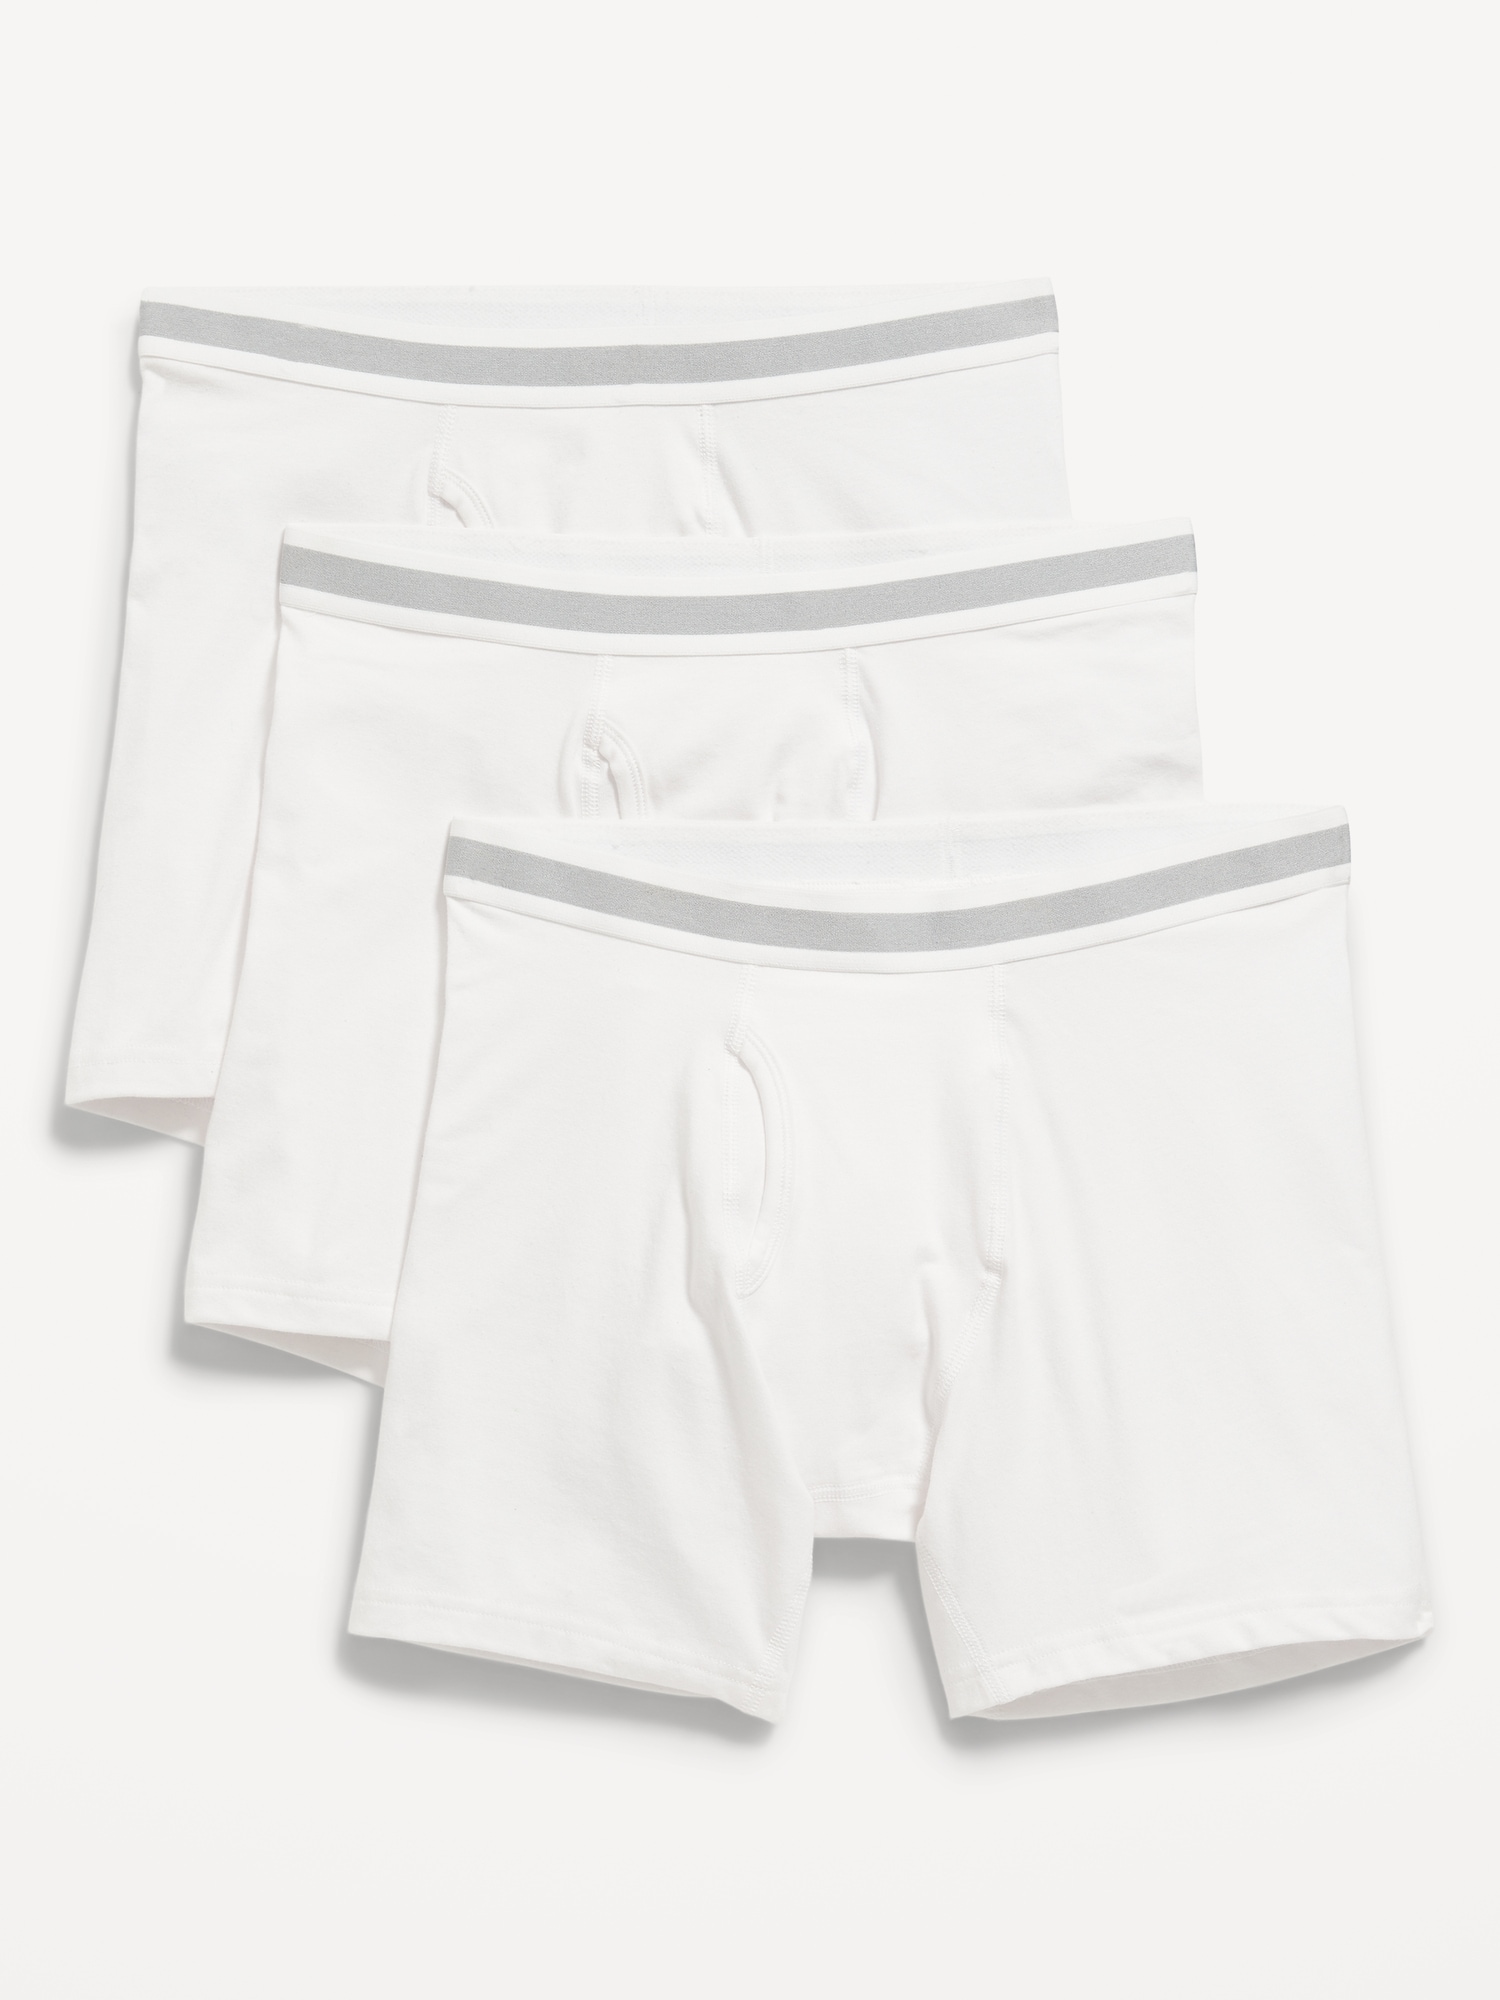 Printed Built-In Flex Boxer-Brief Underwear 3-Pack -- 6.25-inch inseam ...